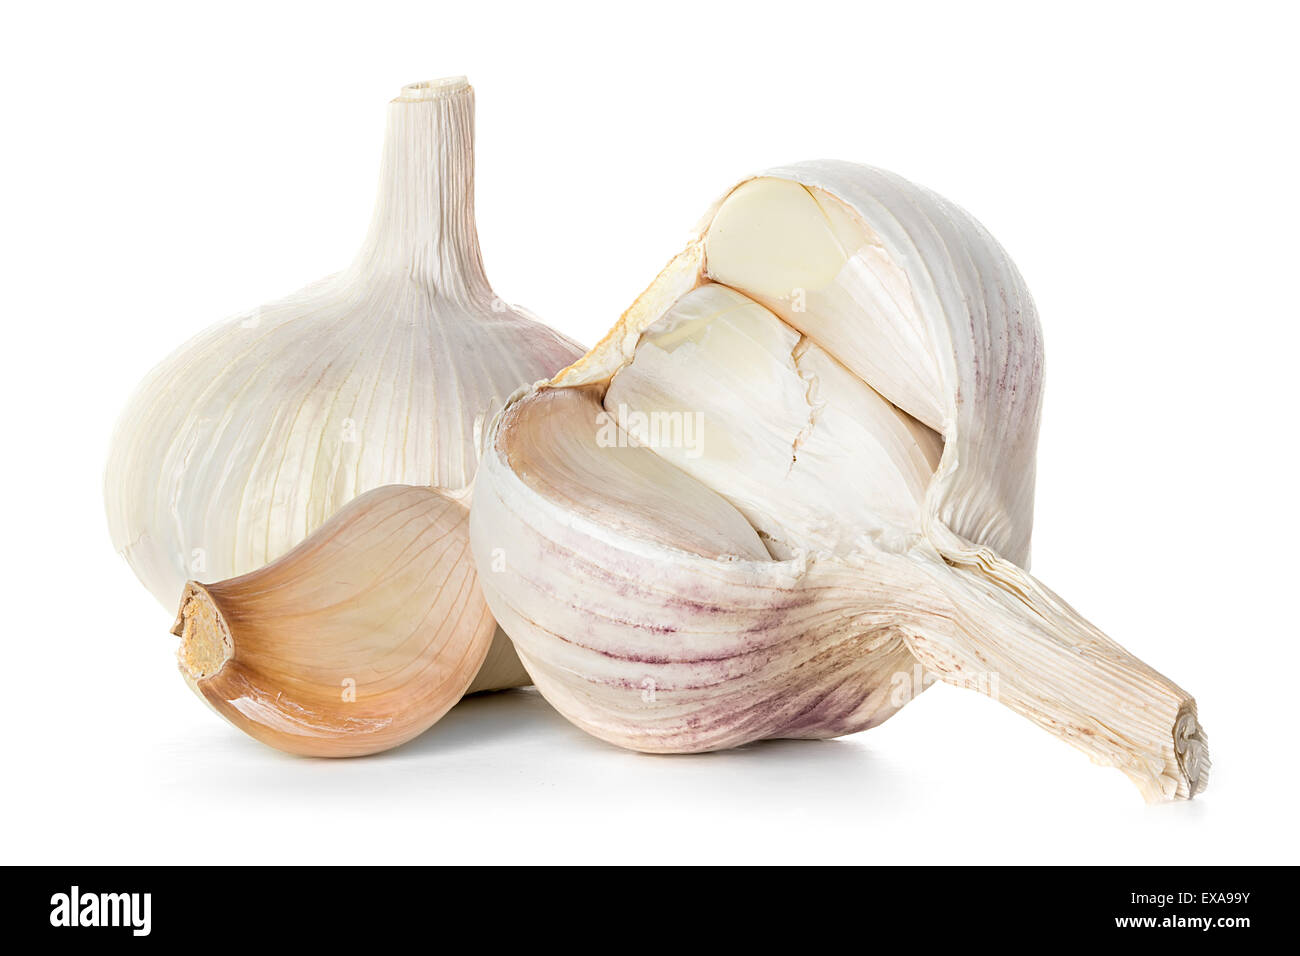 Garlic isolated on white background Stock Photo